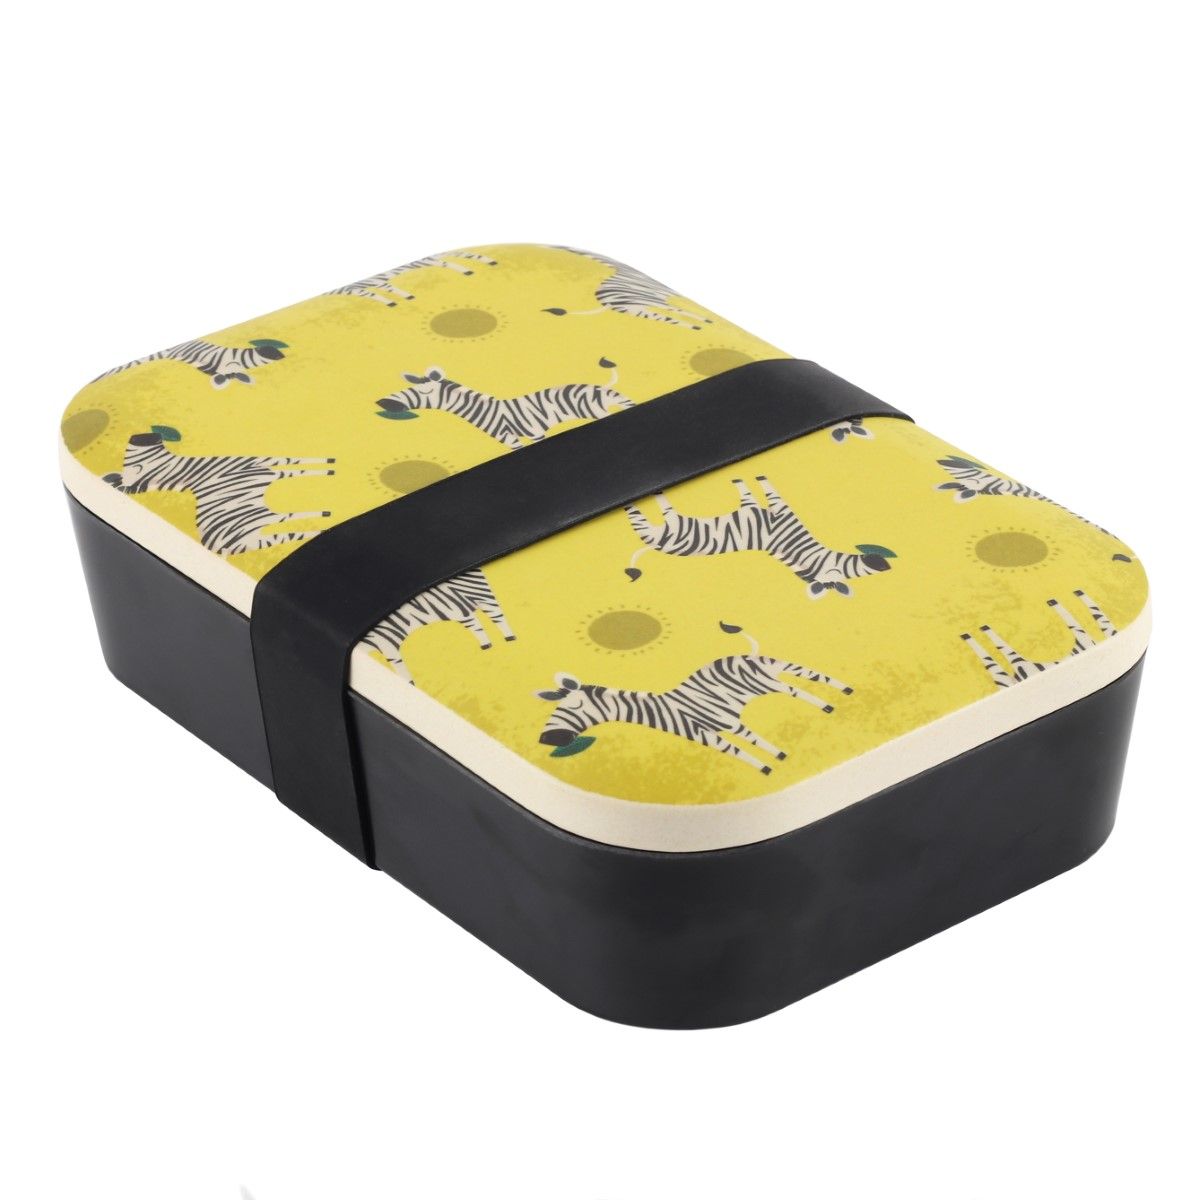 صندوق غذاء من الخيزران على هيئة جلد حمار وحشي زجزاج من ســمثينج ديفرنت